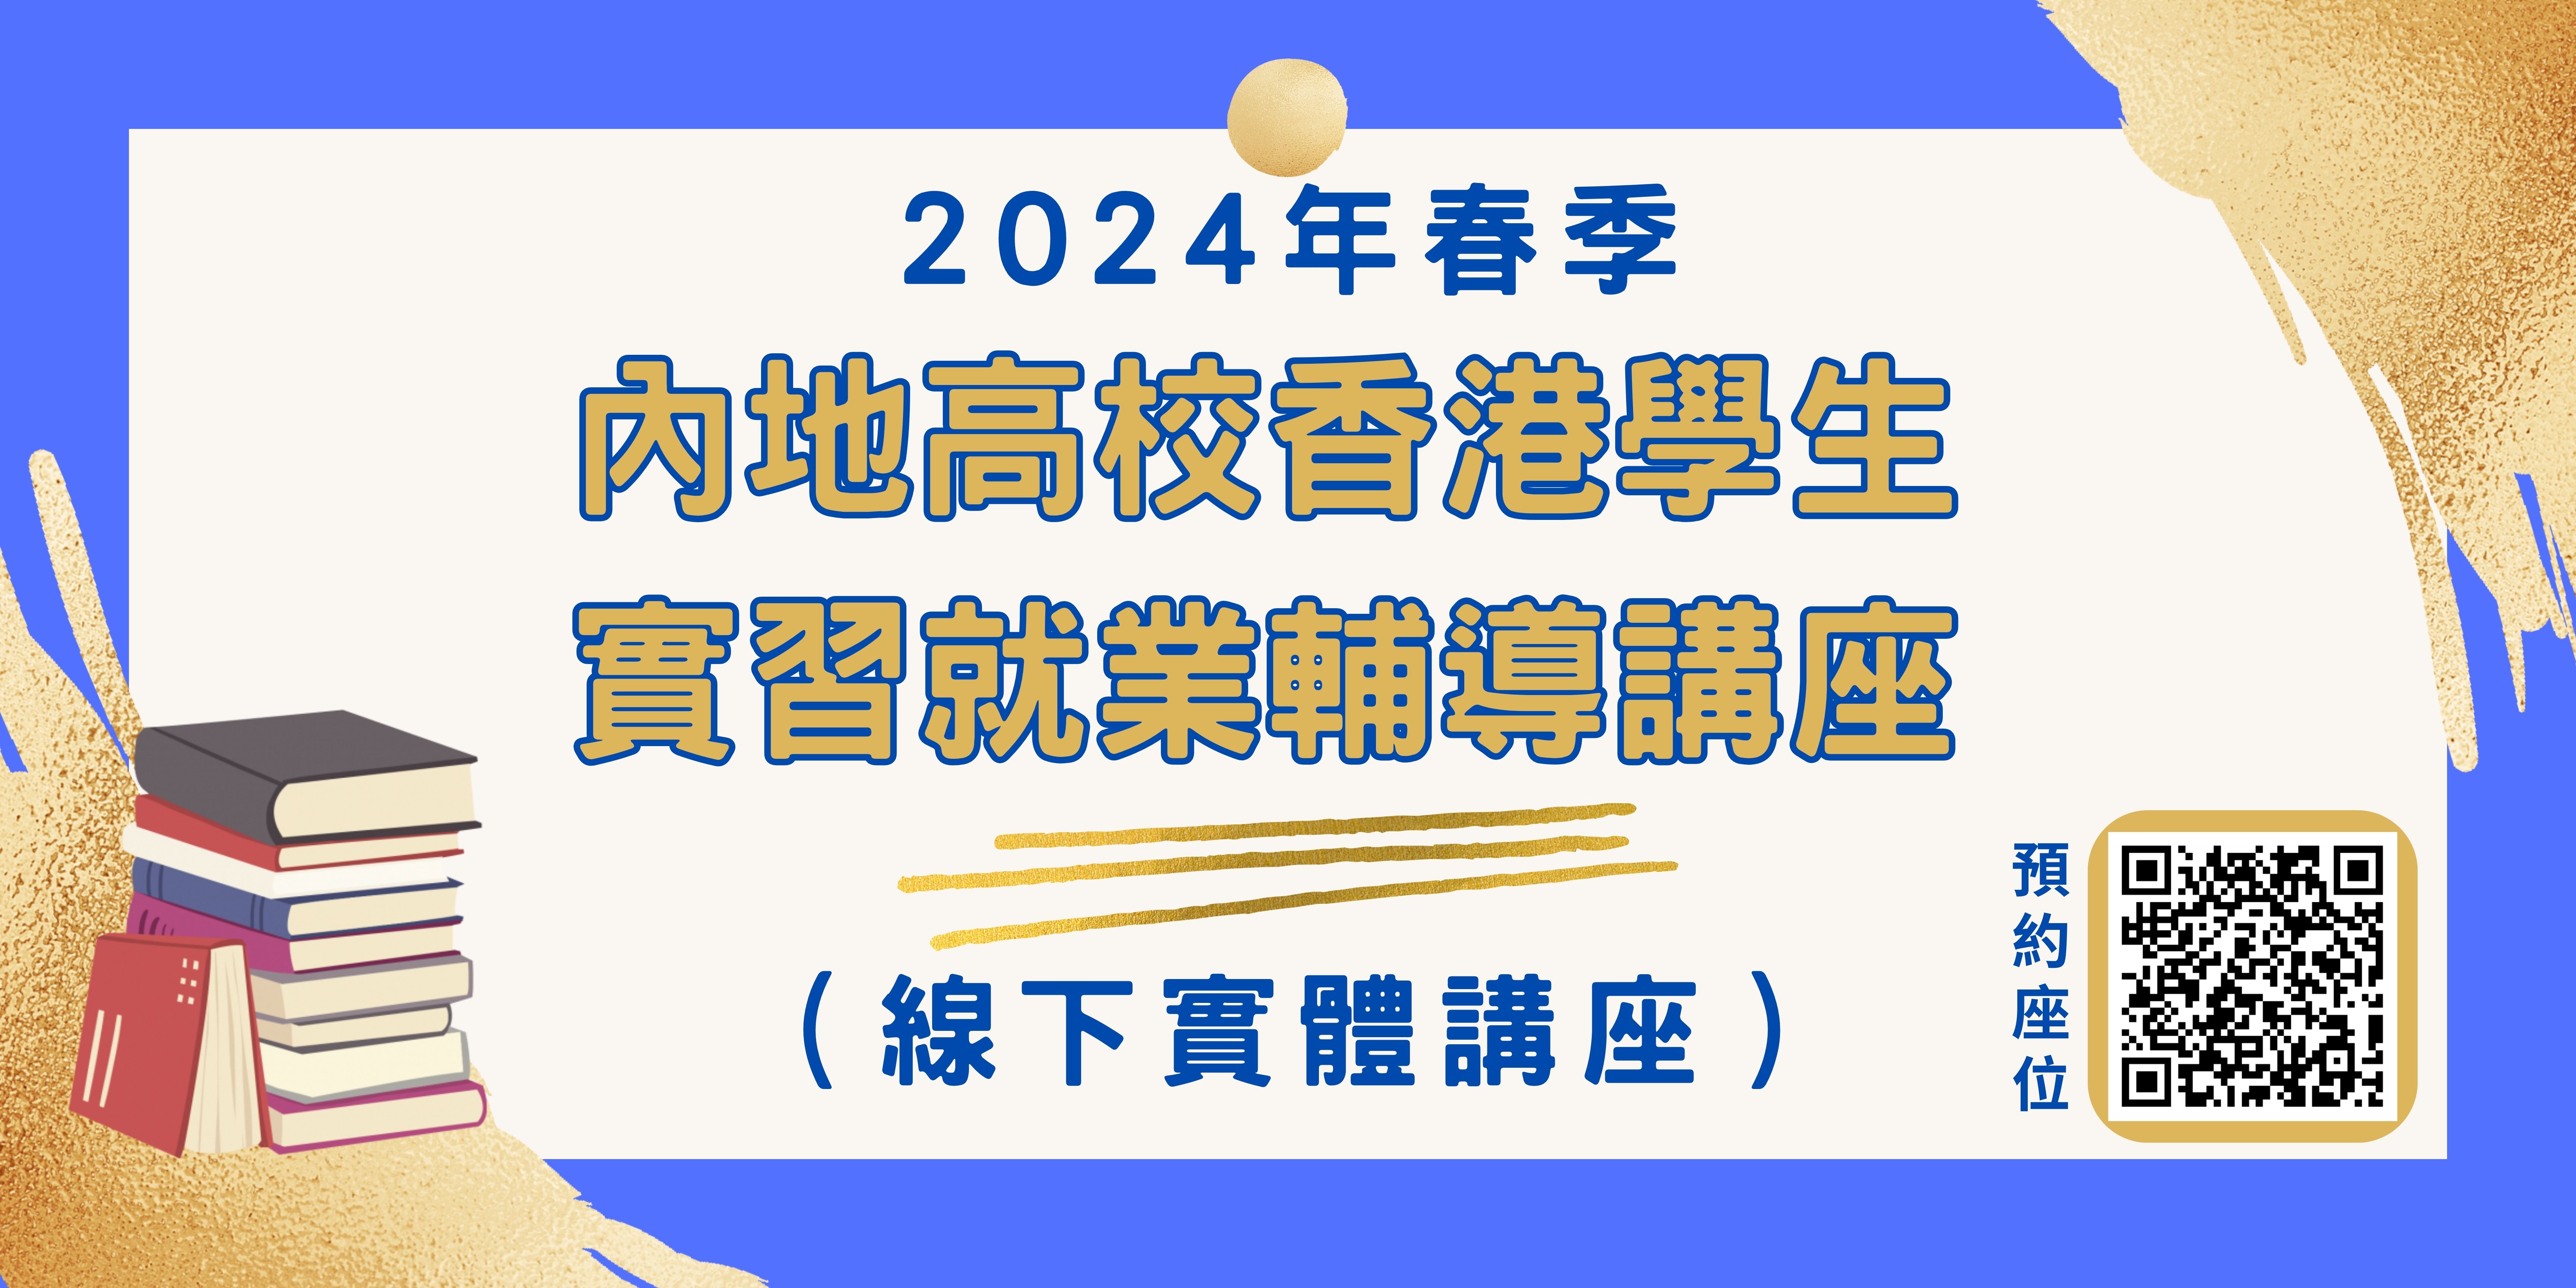 2024年春季內地高校香港學生實習就業輔導講座 講座資訊